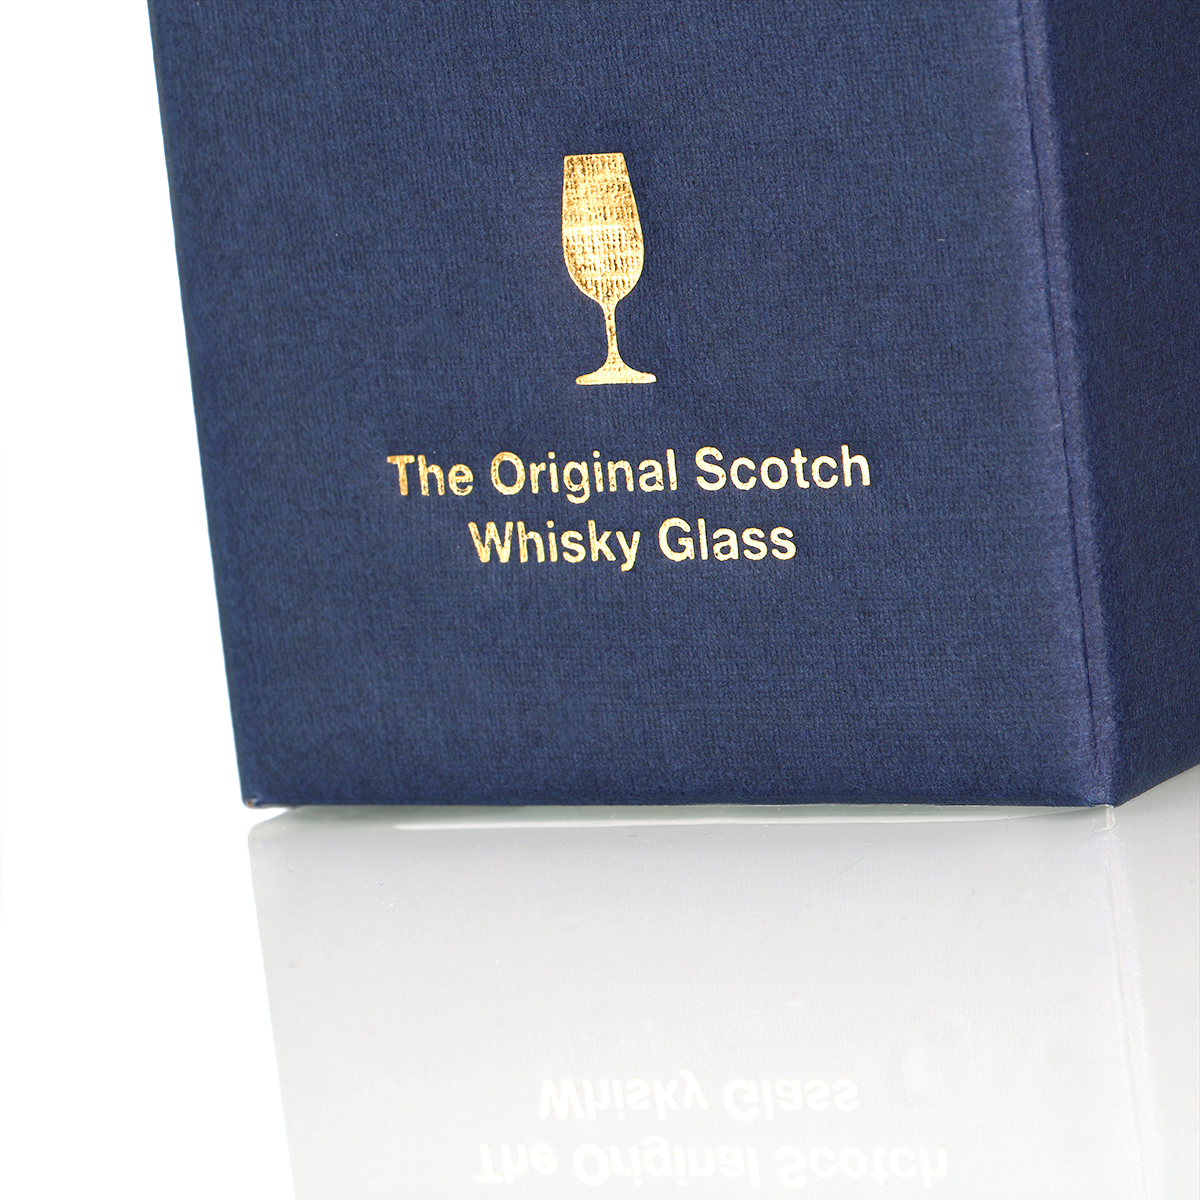 Shottische Distel - Kristall Whisky Tasting Glas / Nosing Copita aus Schottland